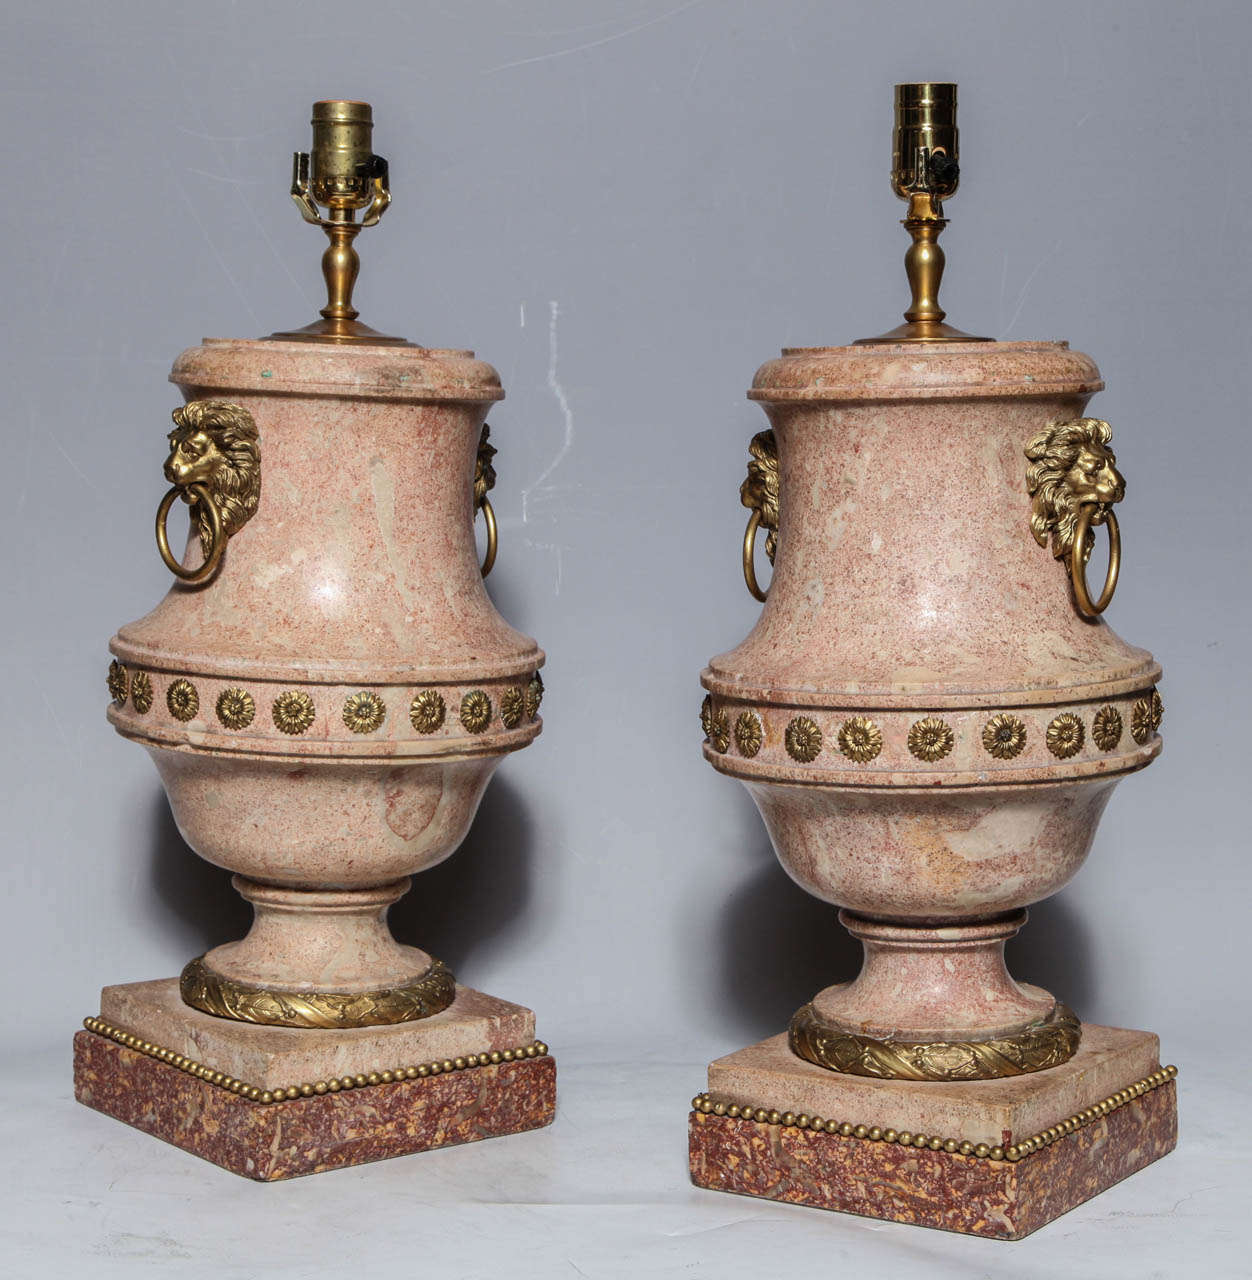 Ein Paar hochwertiger italienischer Scagliola-Urnen mit Ormolu-Fassungen und Marmorsockeln, jetzt als Lampen verkabelt. Die die Löwenmaske tragenden Ringgriffe sind gut modelliert, ebenso wie die zusätzlichen Beschläge.

Scagliola ist eine